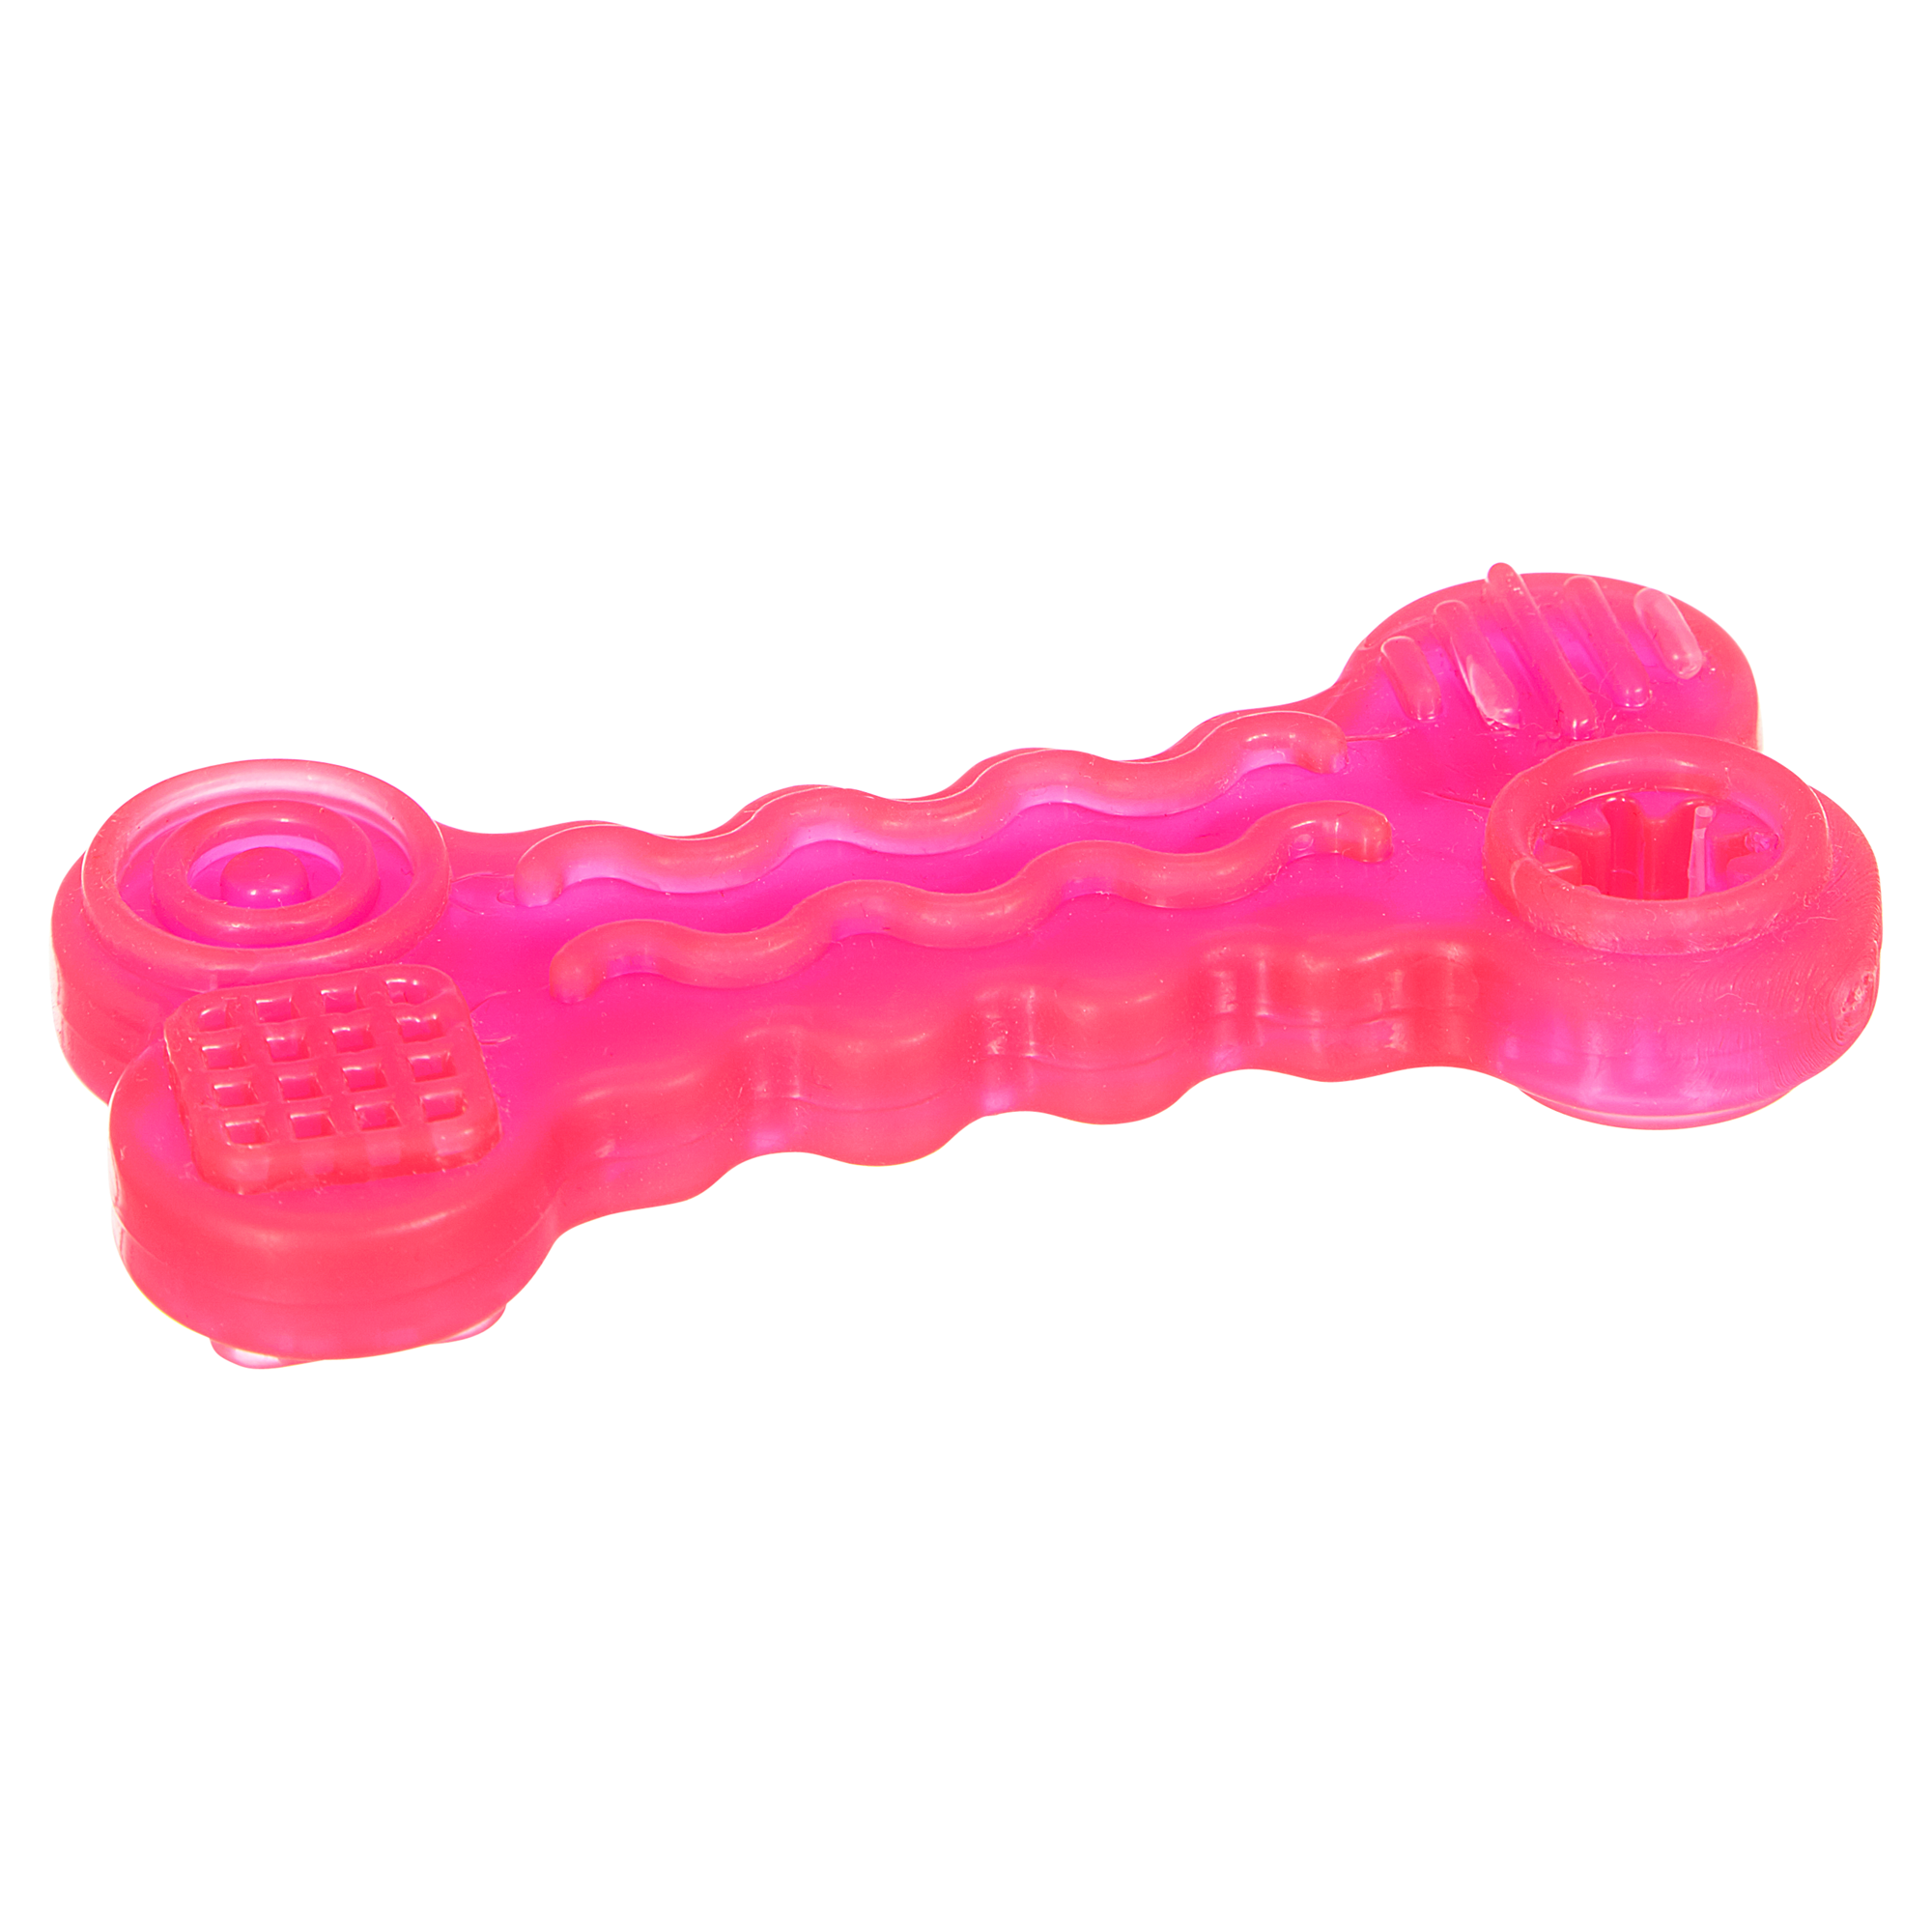 Hundeknochen Gummi 10 cm + product picture